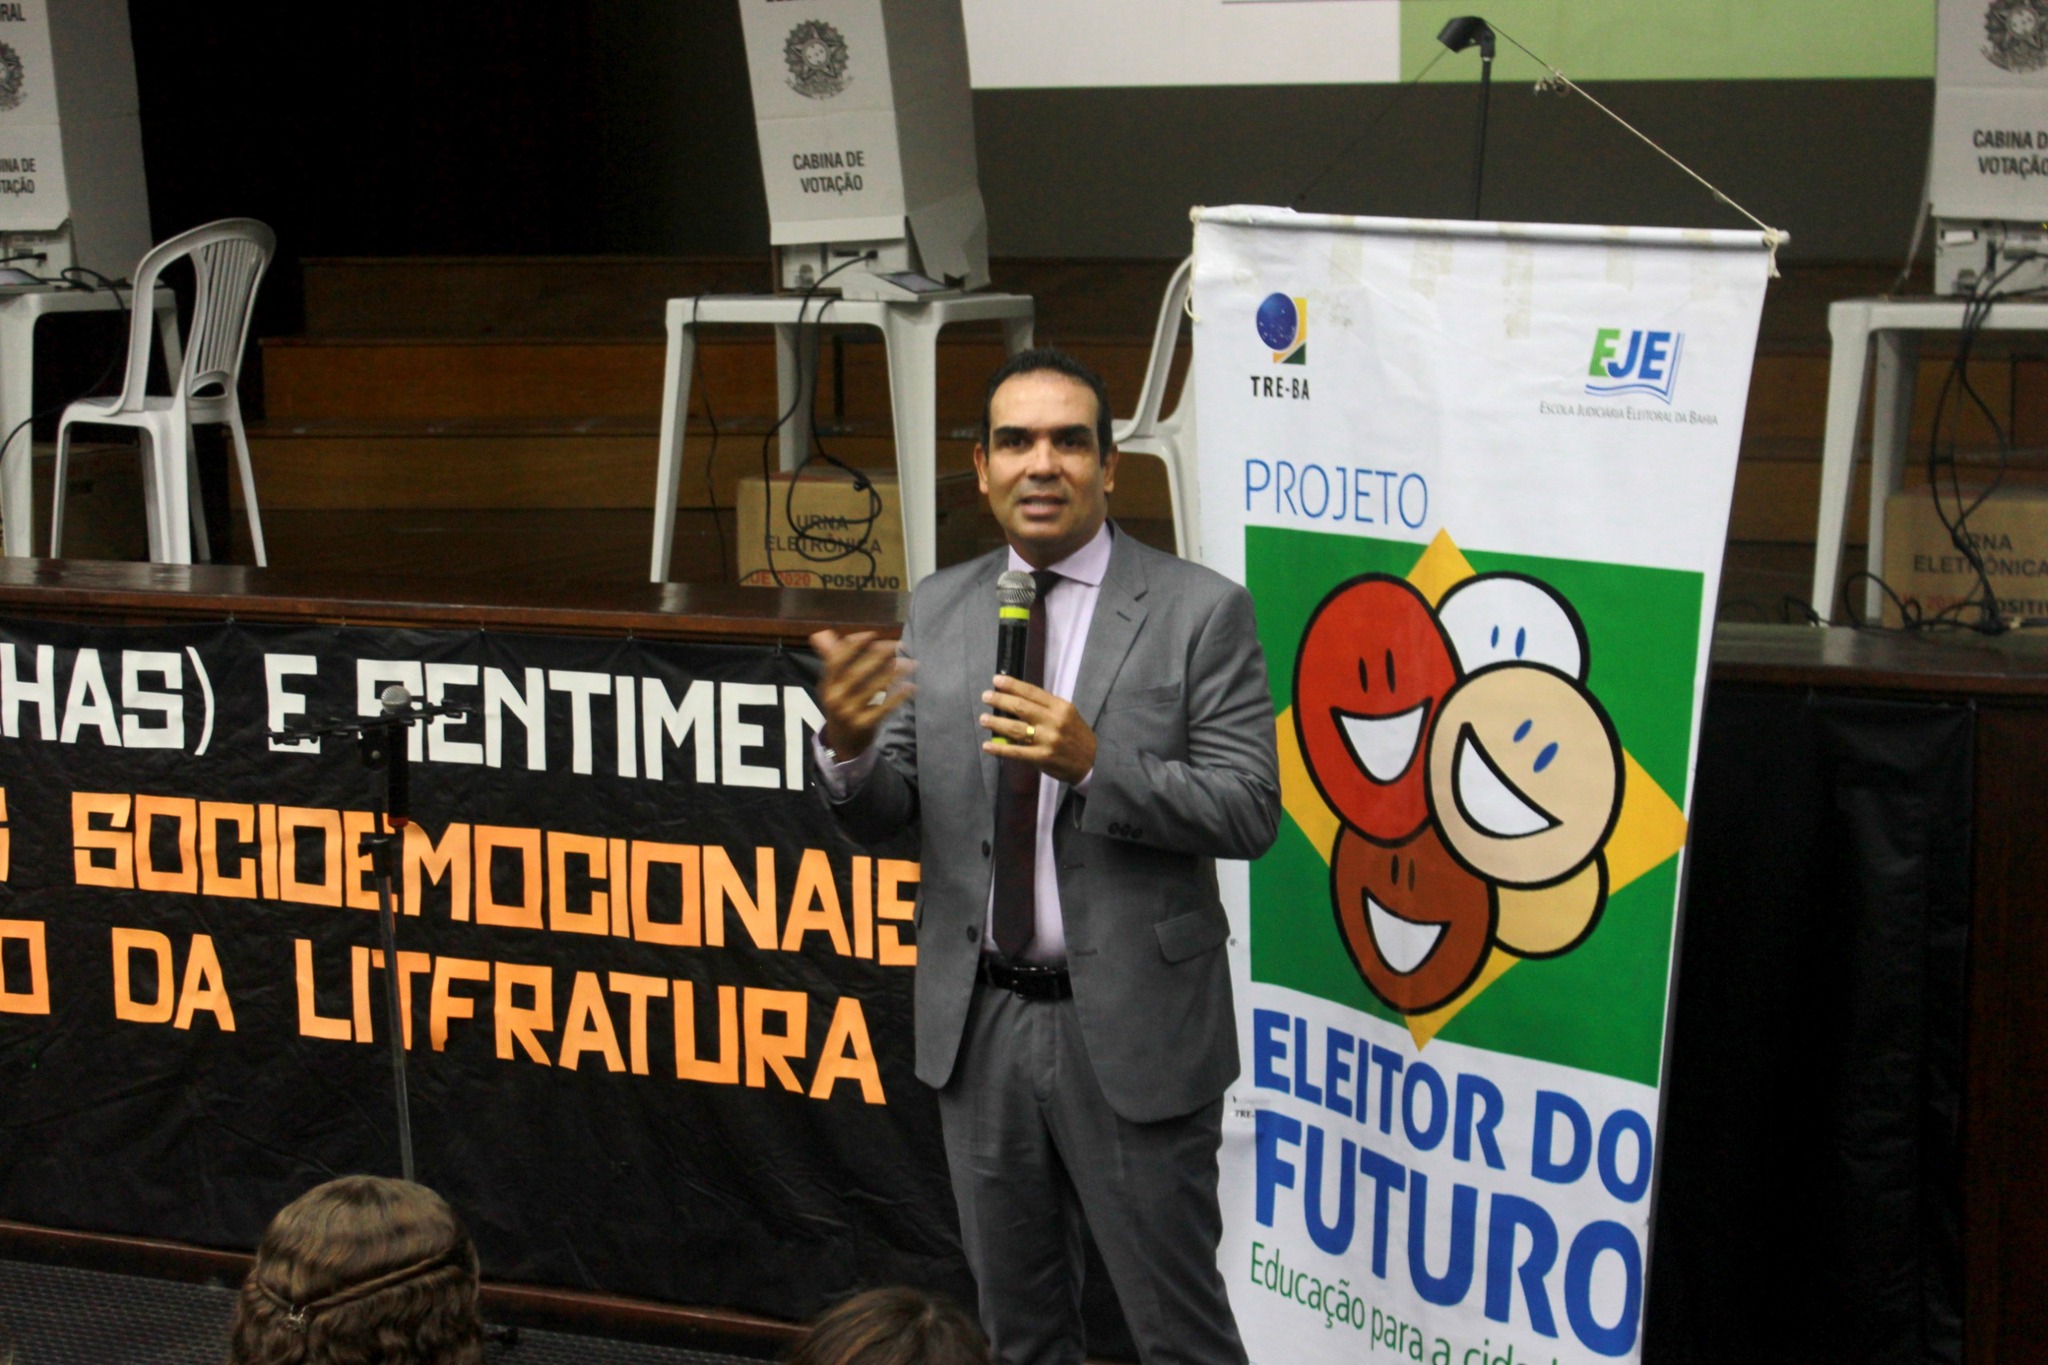 Desembargador Moacyr Pitta Lima no Projeto Eleitor do Futuro.